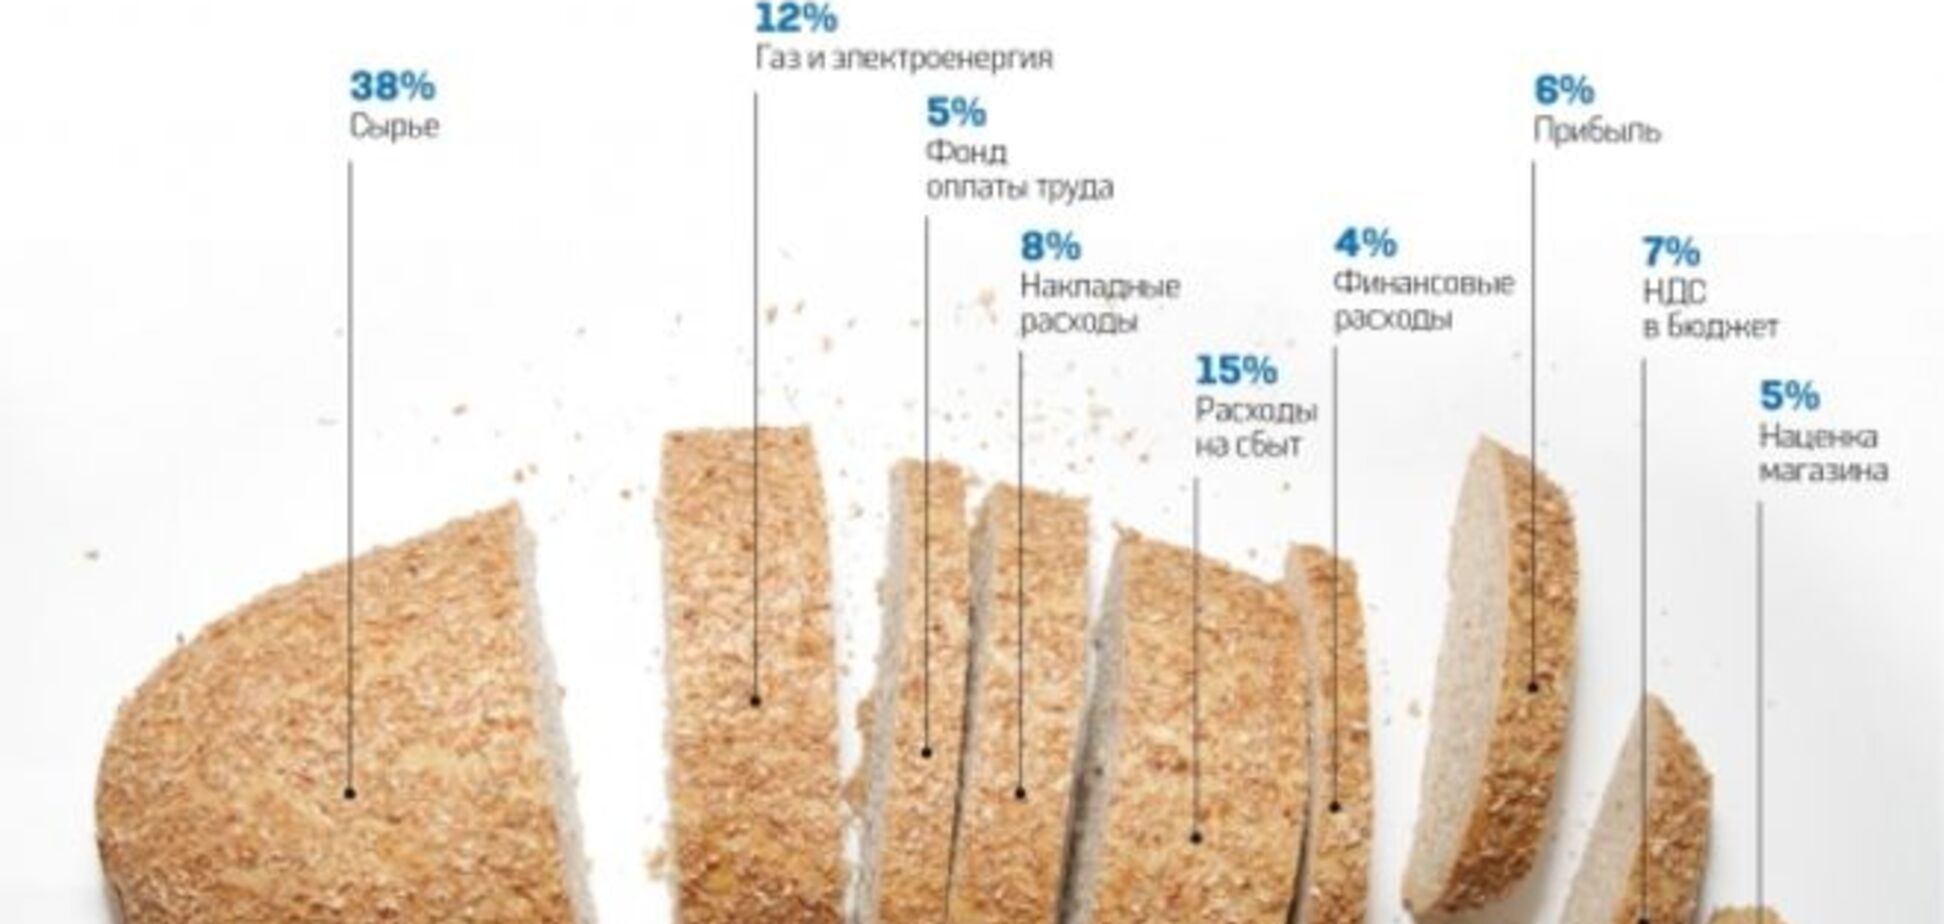 Из чего состоит цена хлеба в Украине: опубликована инфографика